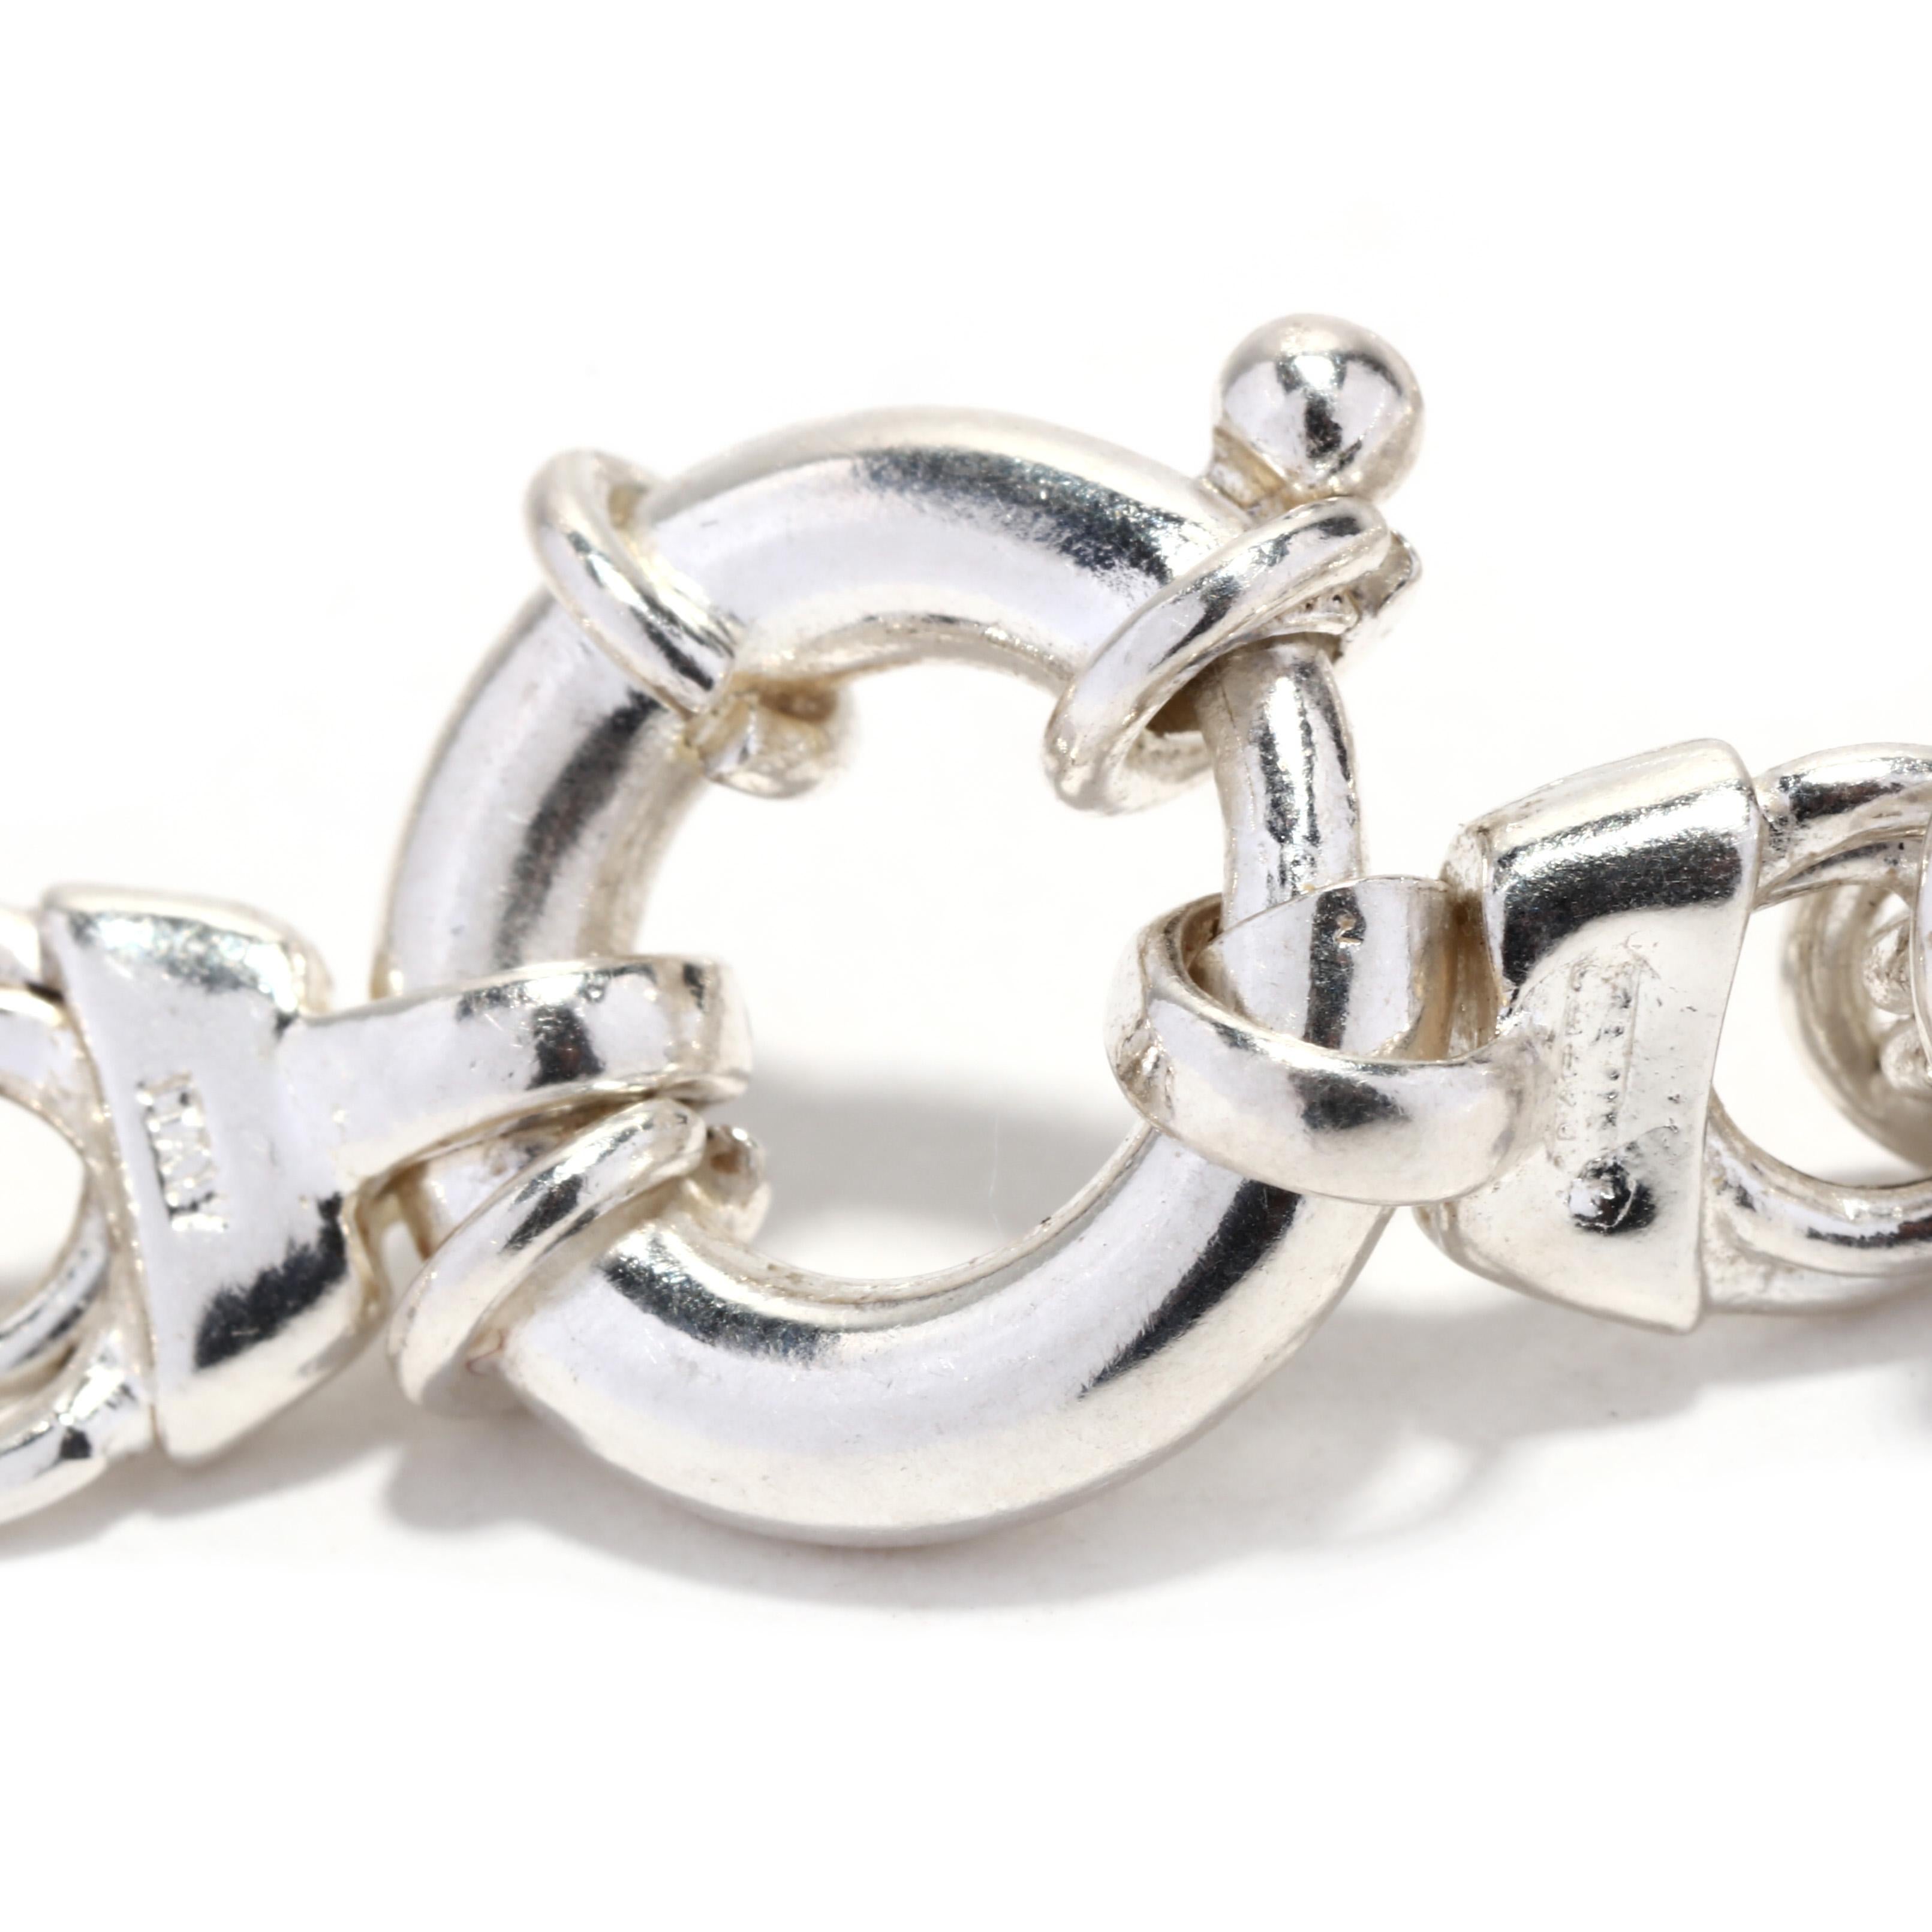 Women's or Men's Vintage Italian Byzantine Chain Bracelet, Sterling Silver